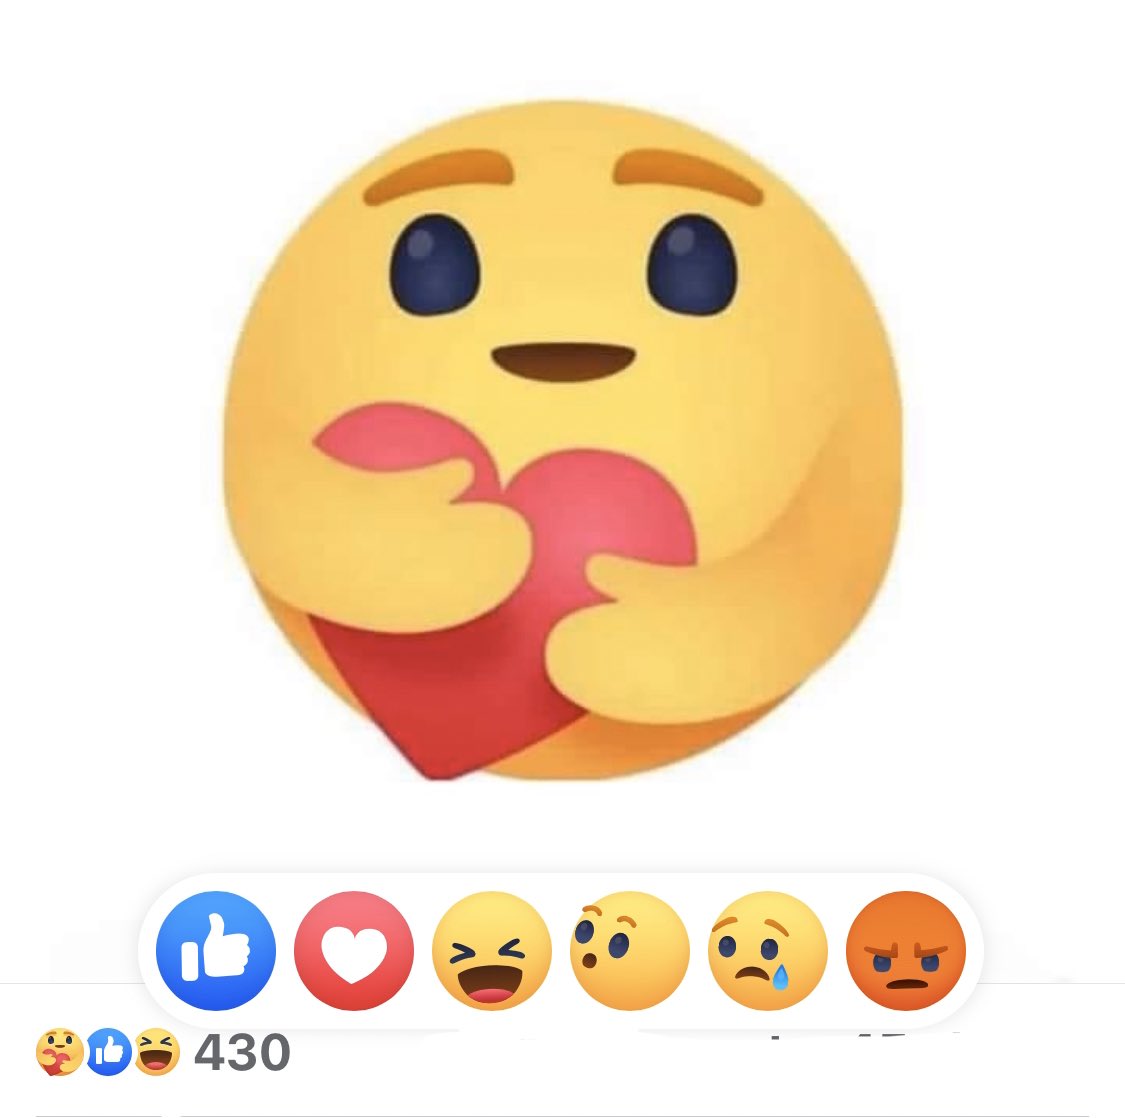 Zum einfügen facebook smileys kopieren und ᐅ Emojis